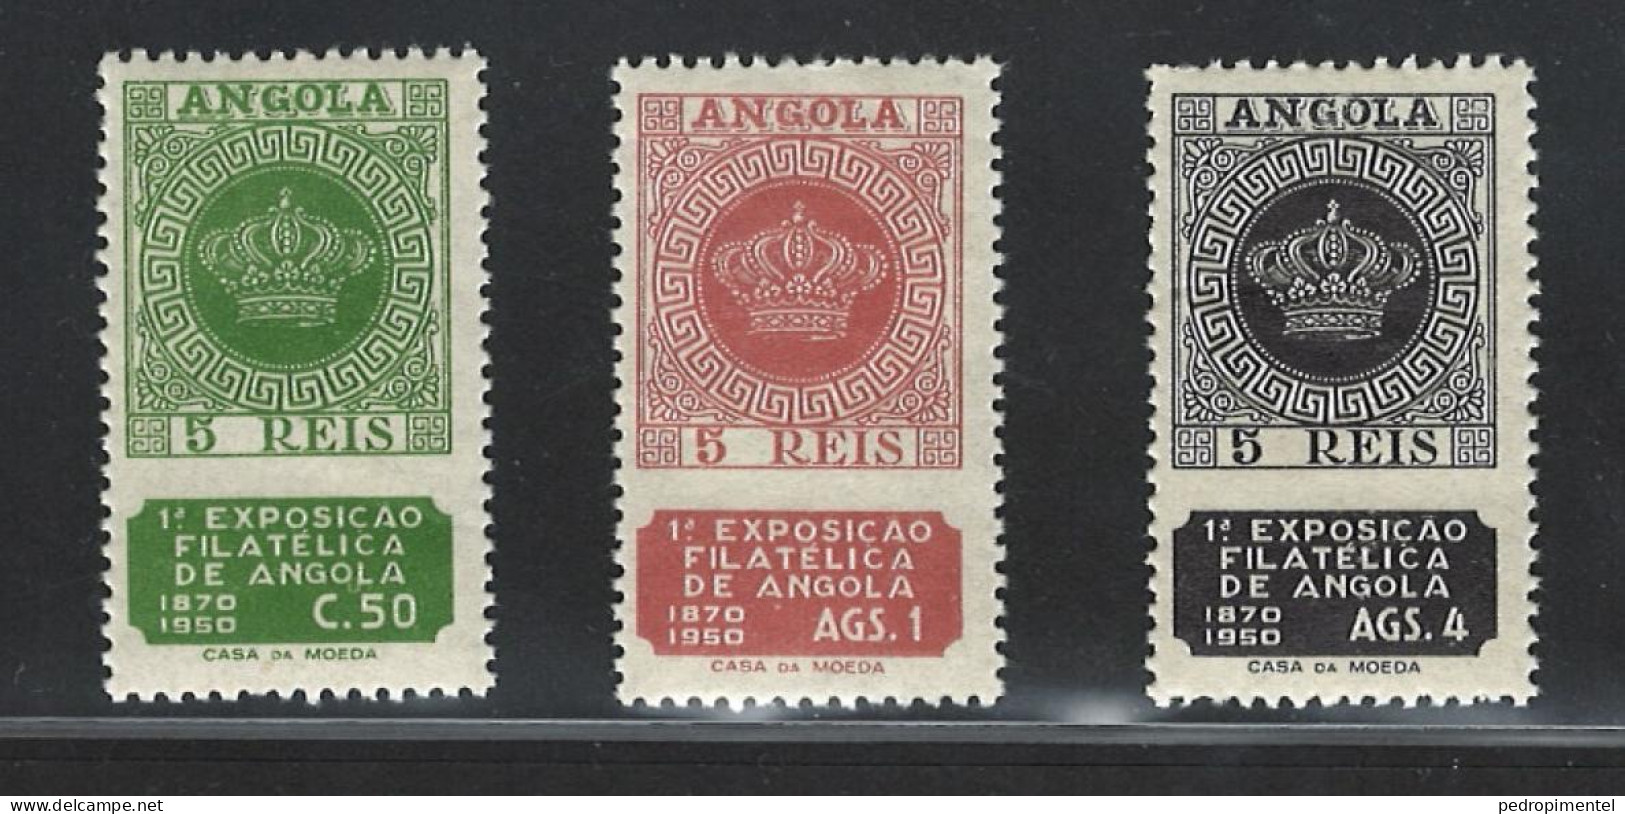 Portugal Angola 1950 "Philatelic Exhibition" MNH Mundifil Angola #321-323 - Angola